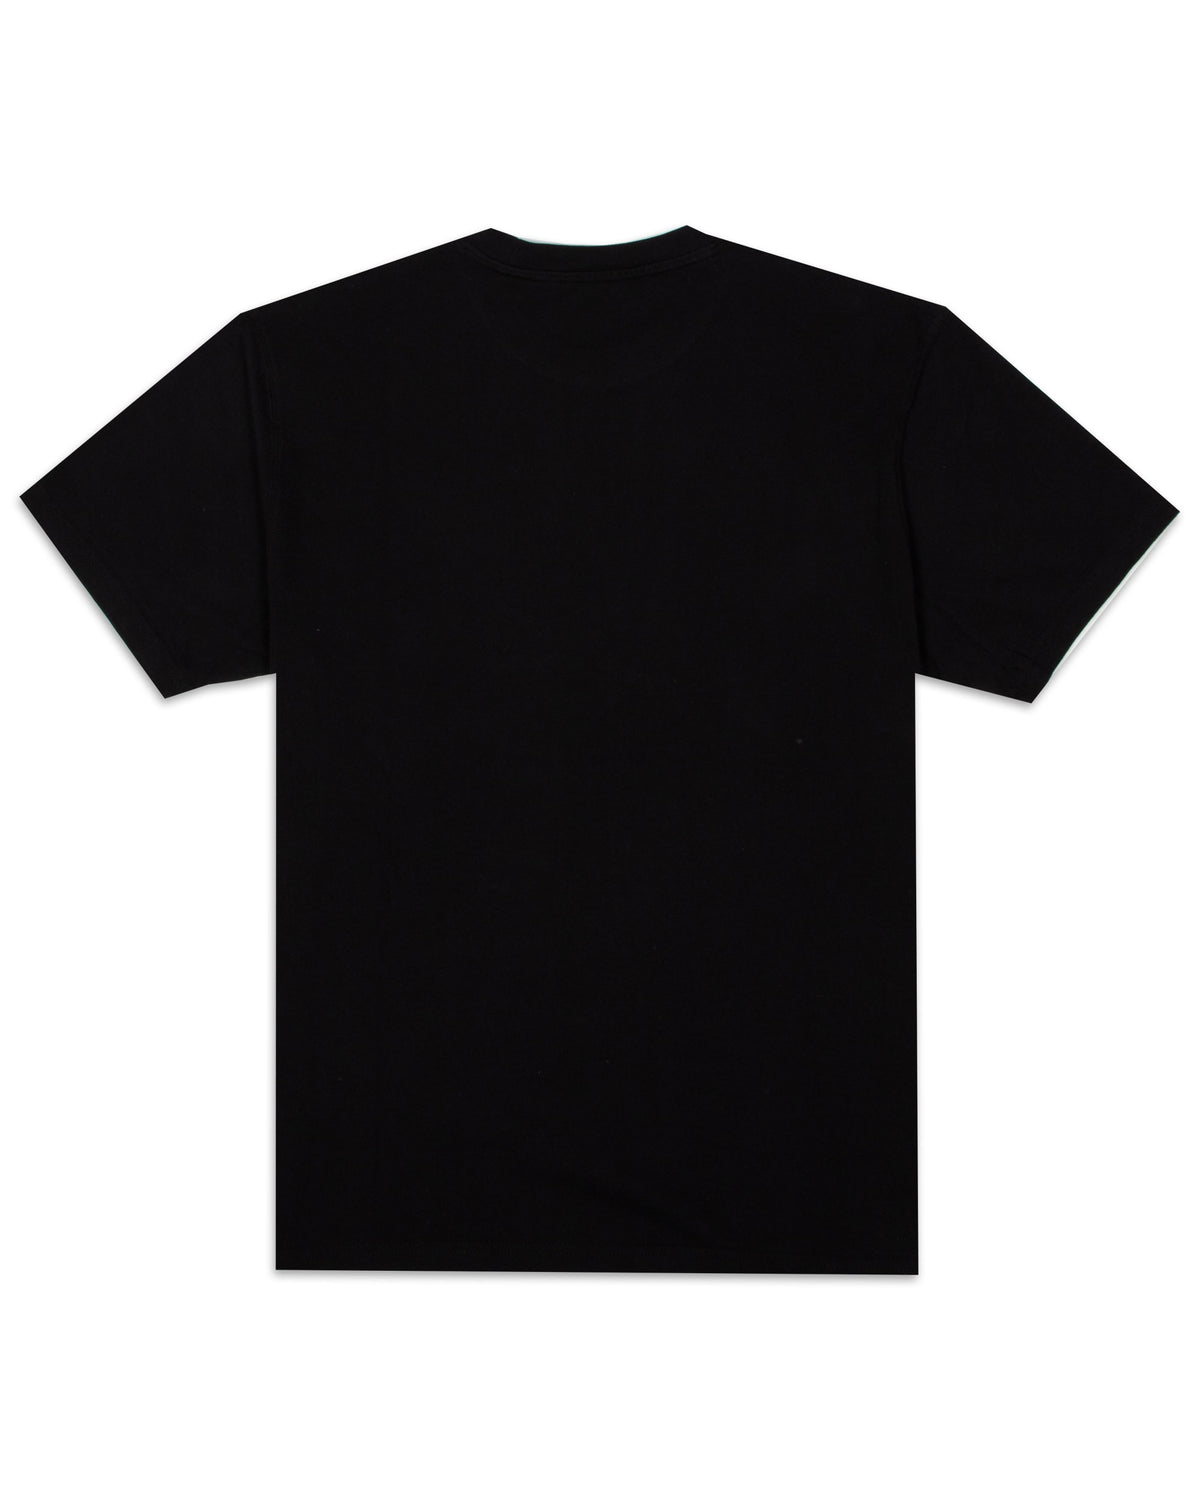 T-Shirt Sundek Surf Limited Edition Black